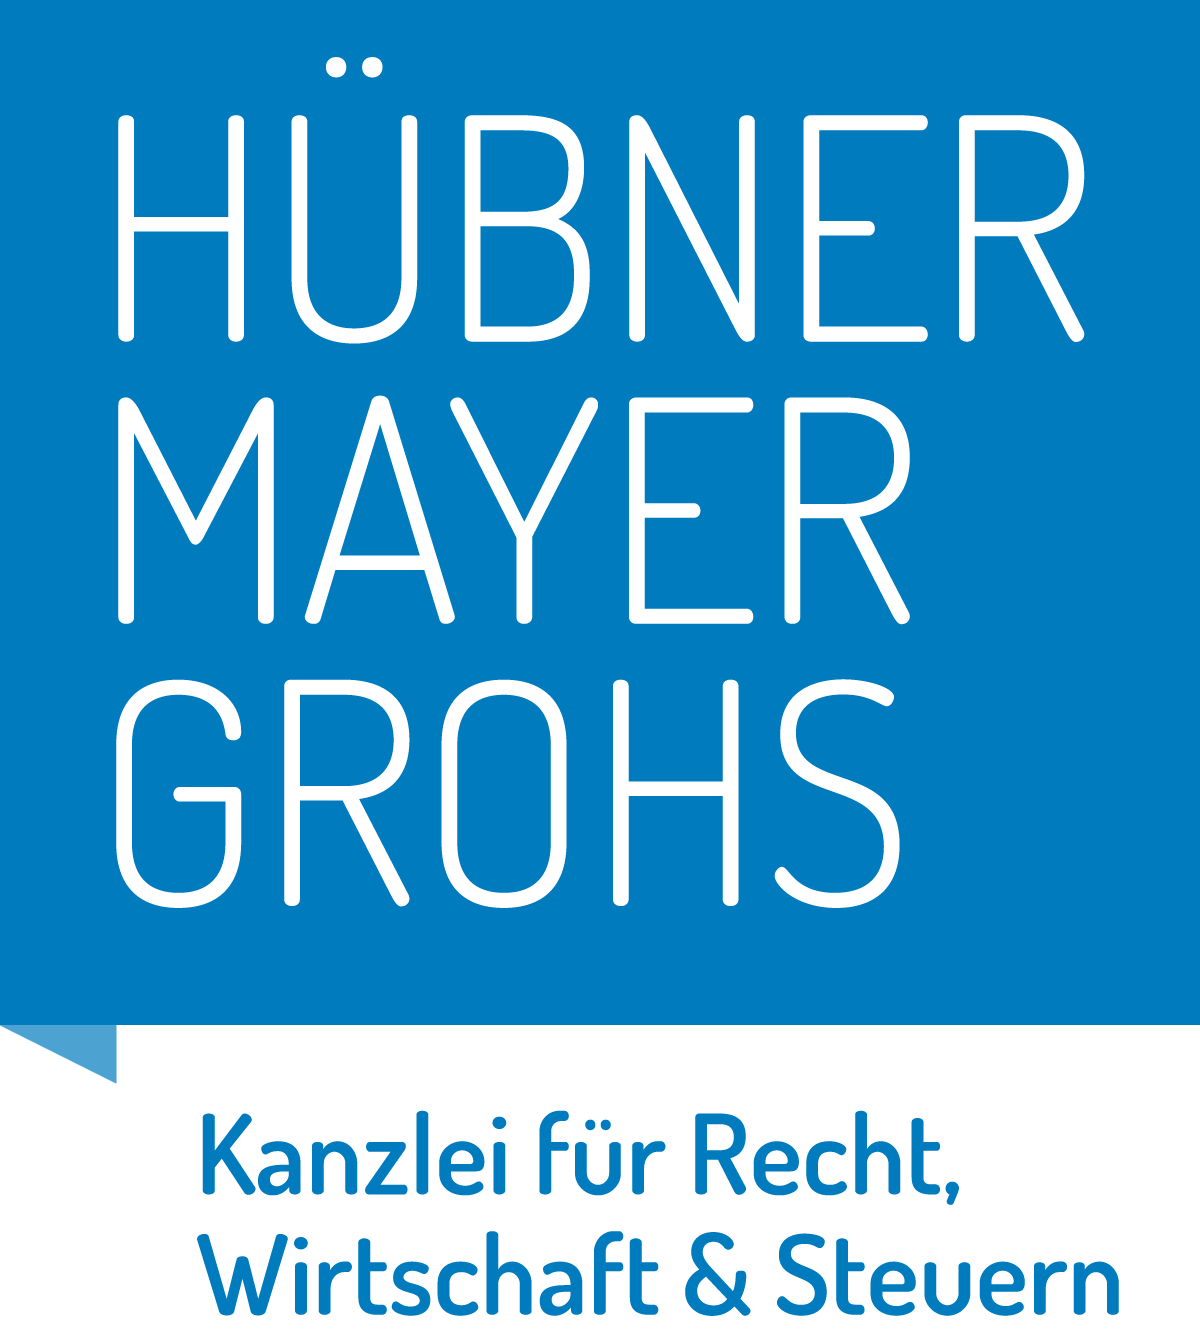 Hübner Mayer Grohs | Kanzlei für Recht, Wirtschaft & Steuern